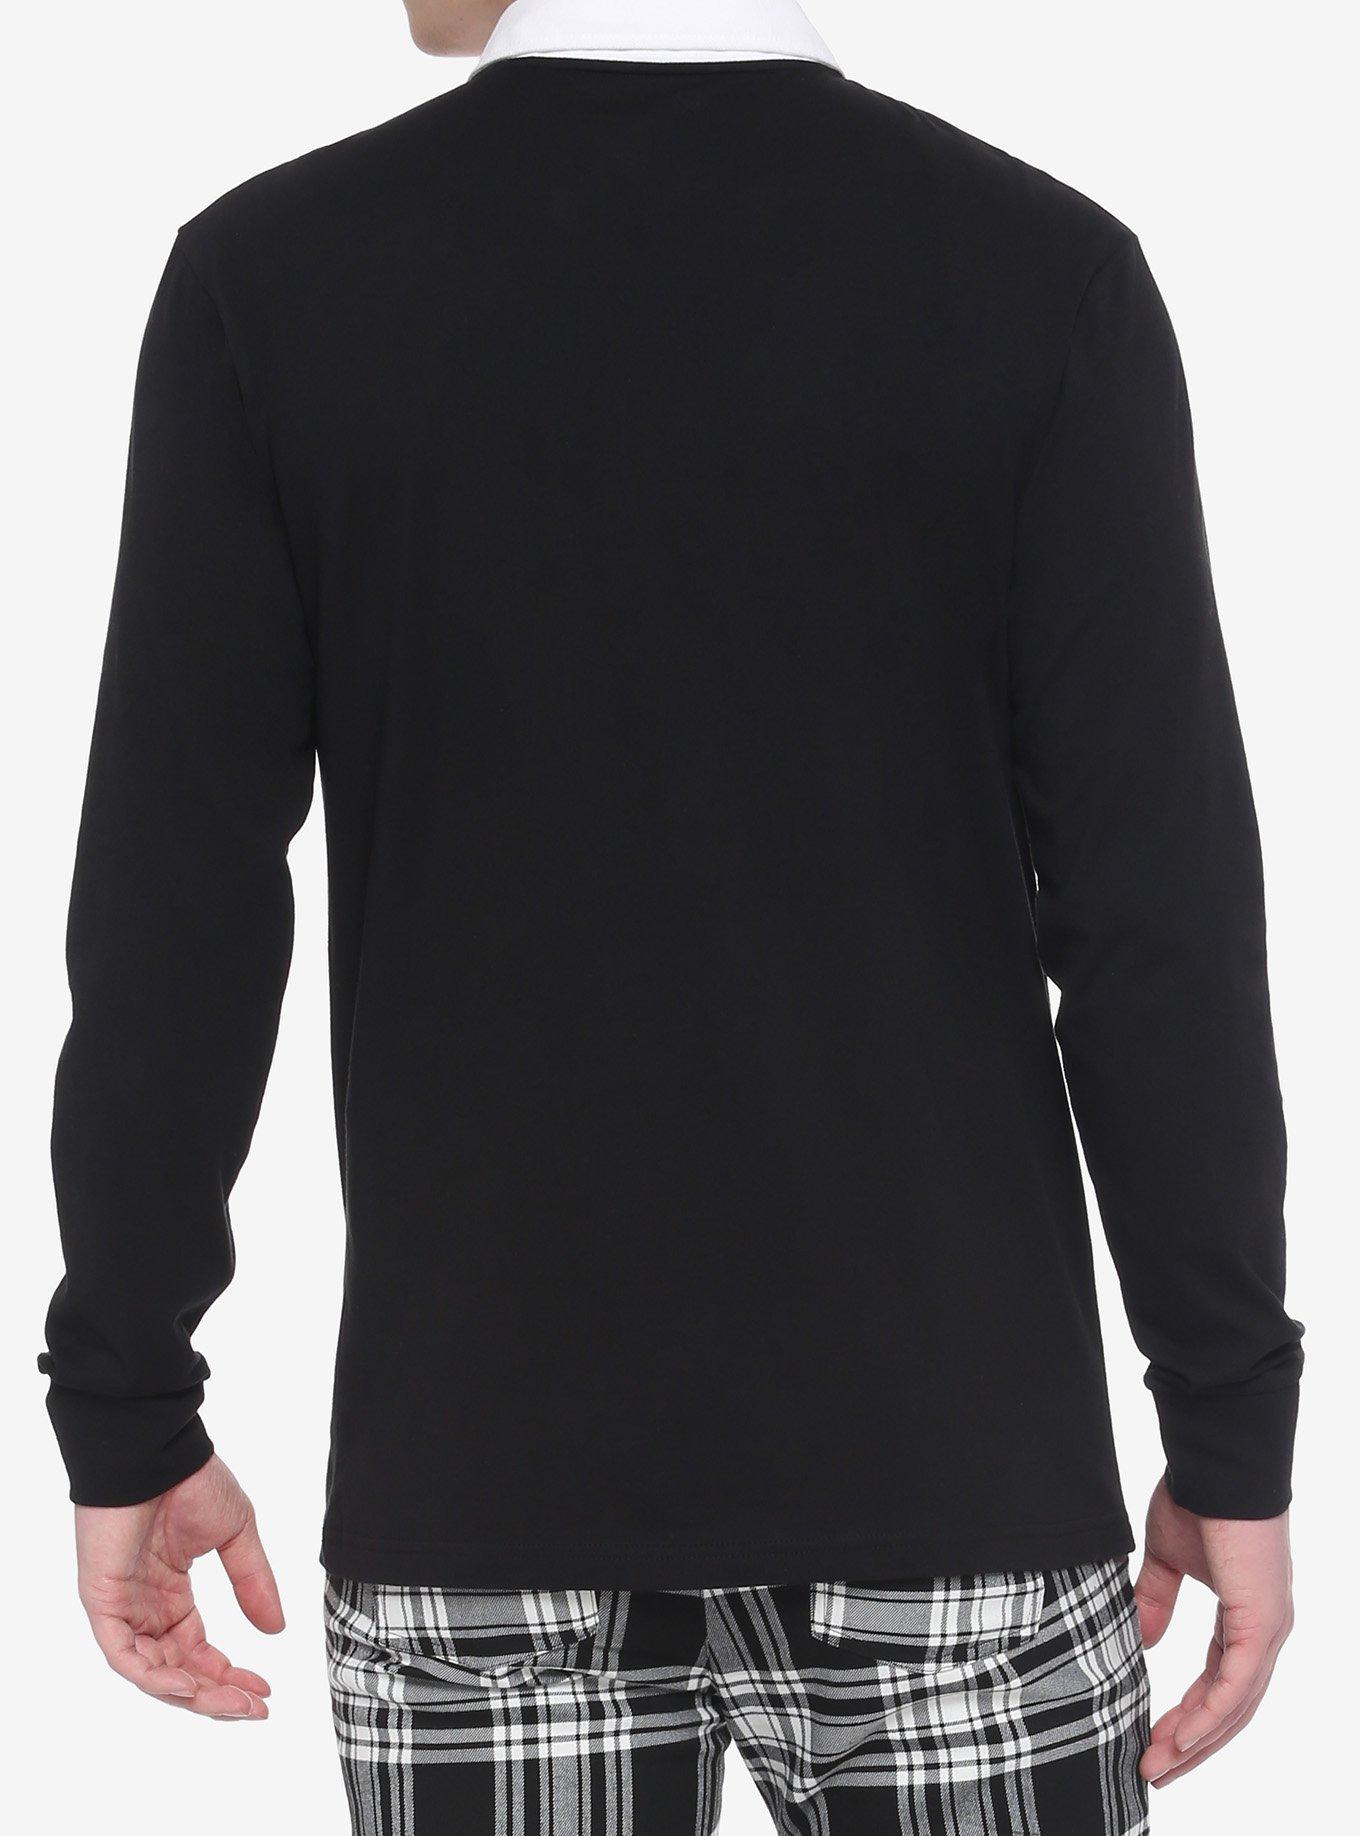 Black Chain White Collar Long-Sleeve Shirt, BLACK, alternate